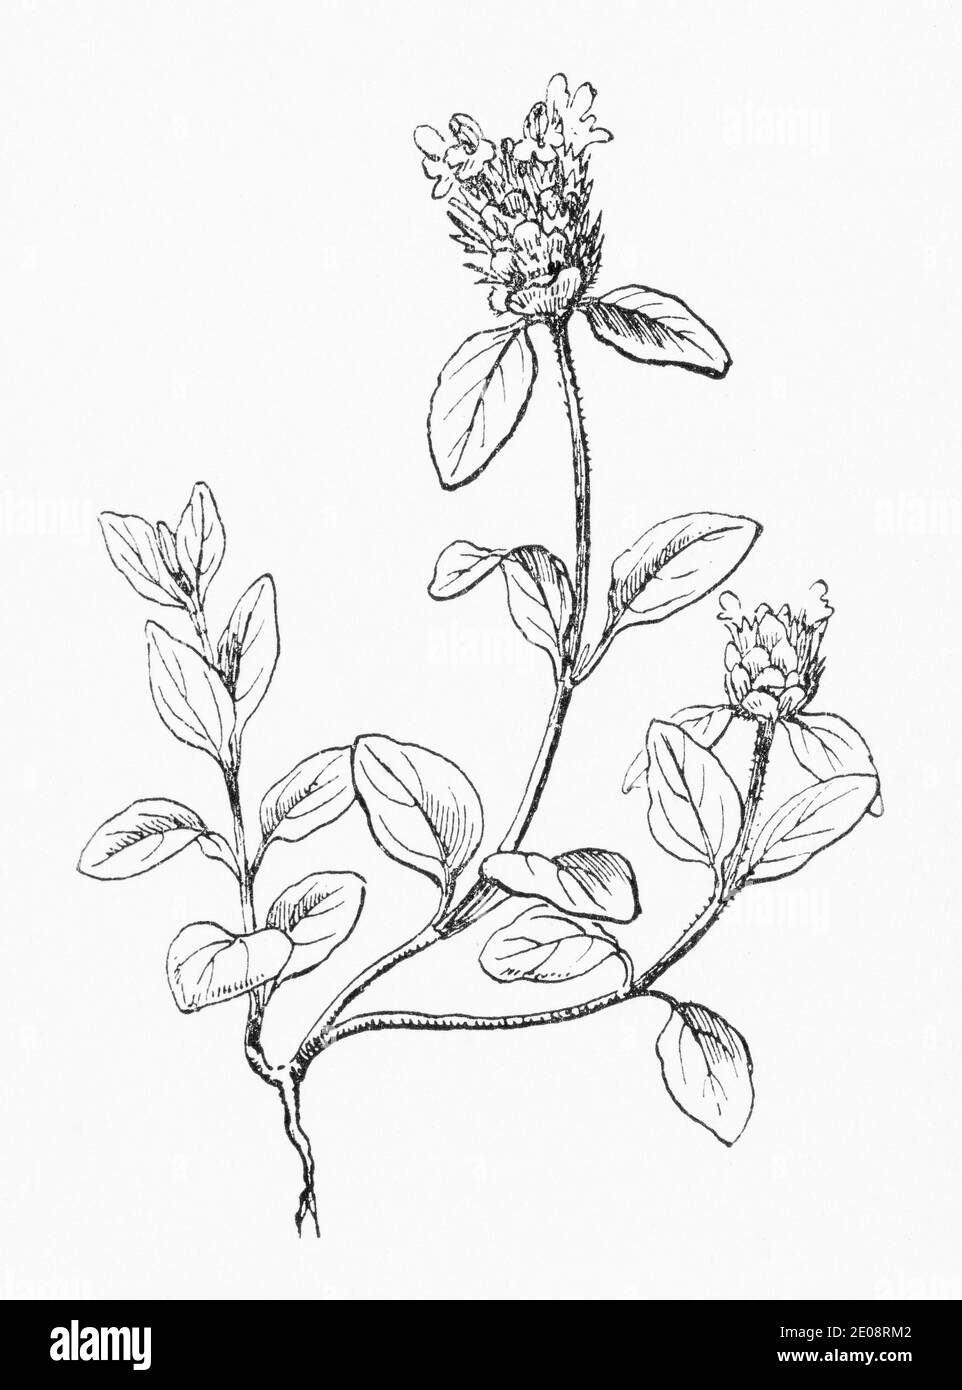 Ancienne gravure d'illustration botanique de Self Heal / Prunella vulgaris. Plante médicinale traditionnelle. Voir Remarques Banque D'Images